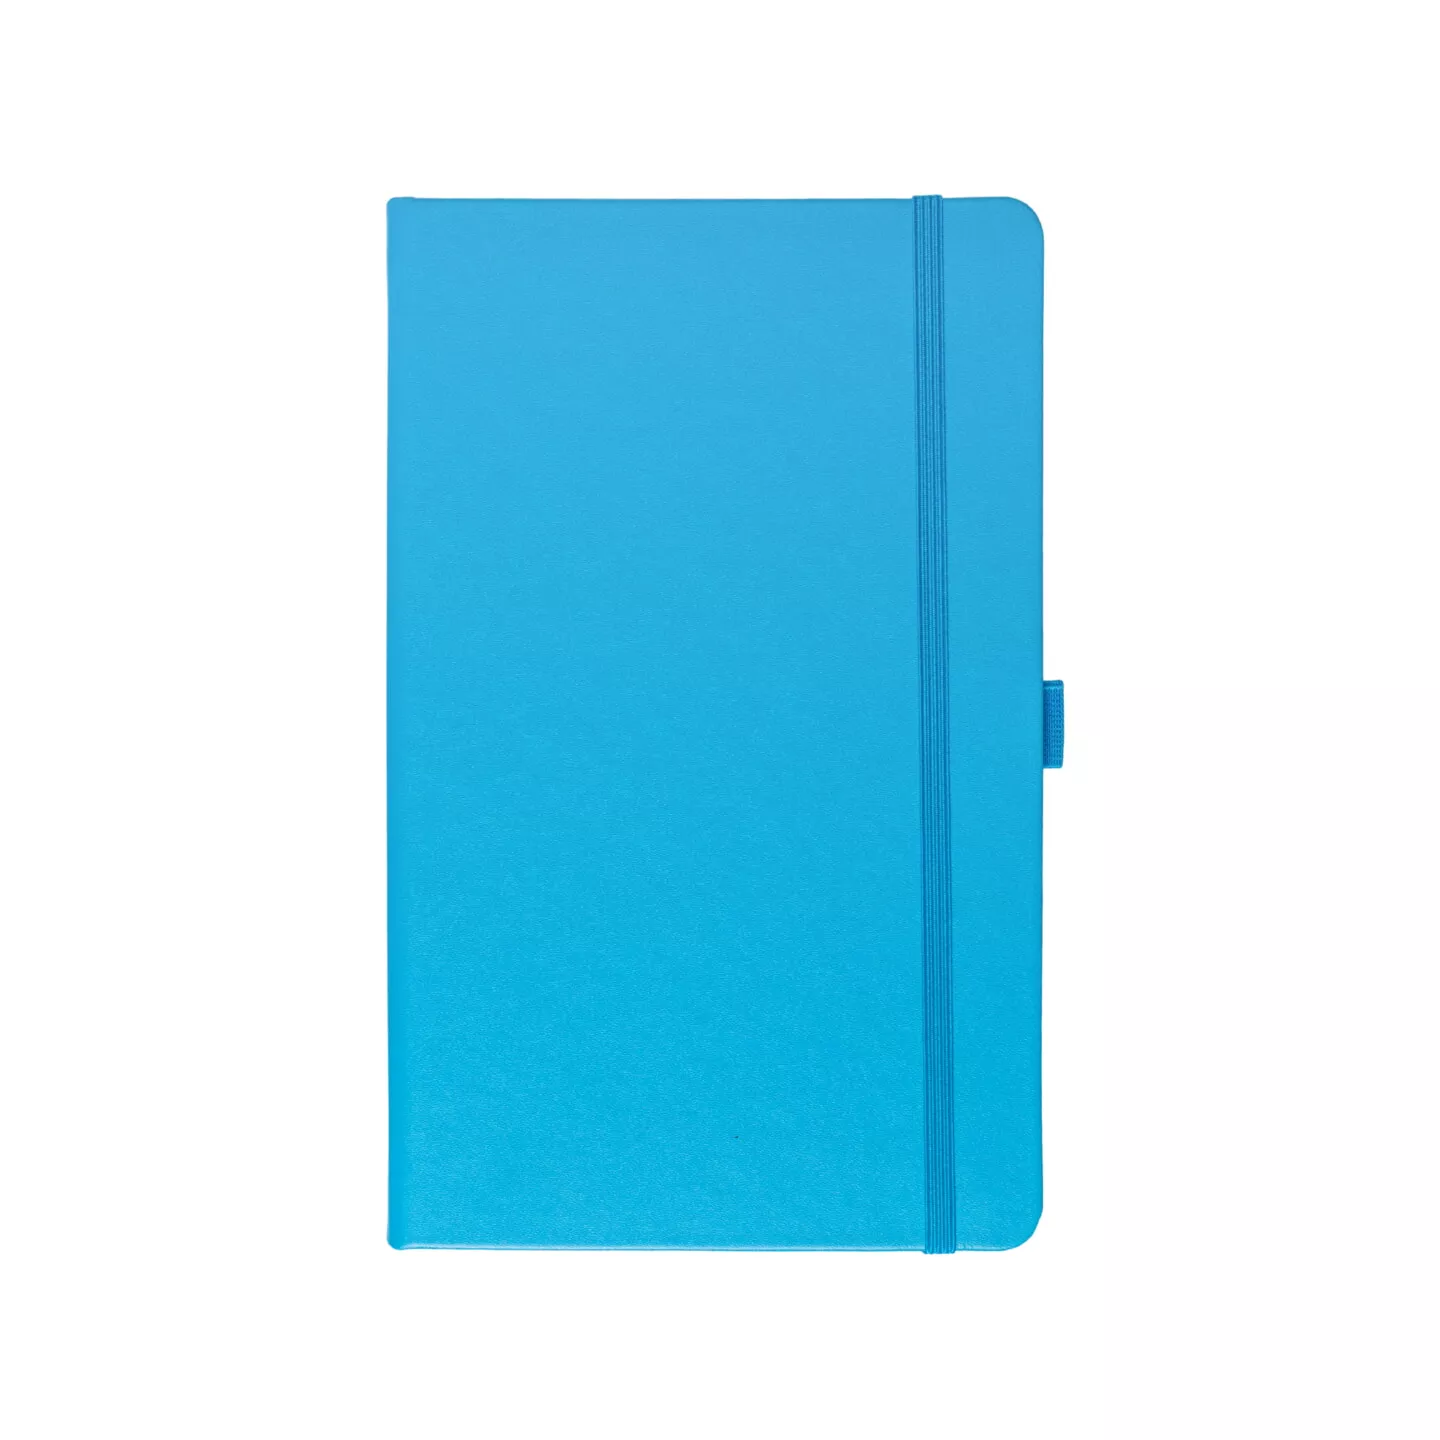 Блокнот для зарисовок Sketchmarker 140г/кв.м 9*14см 80л (Синий Карибский)